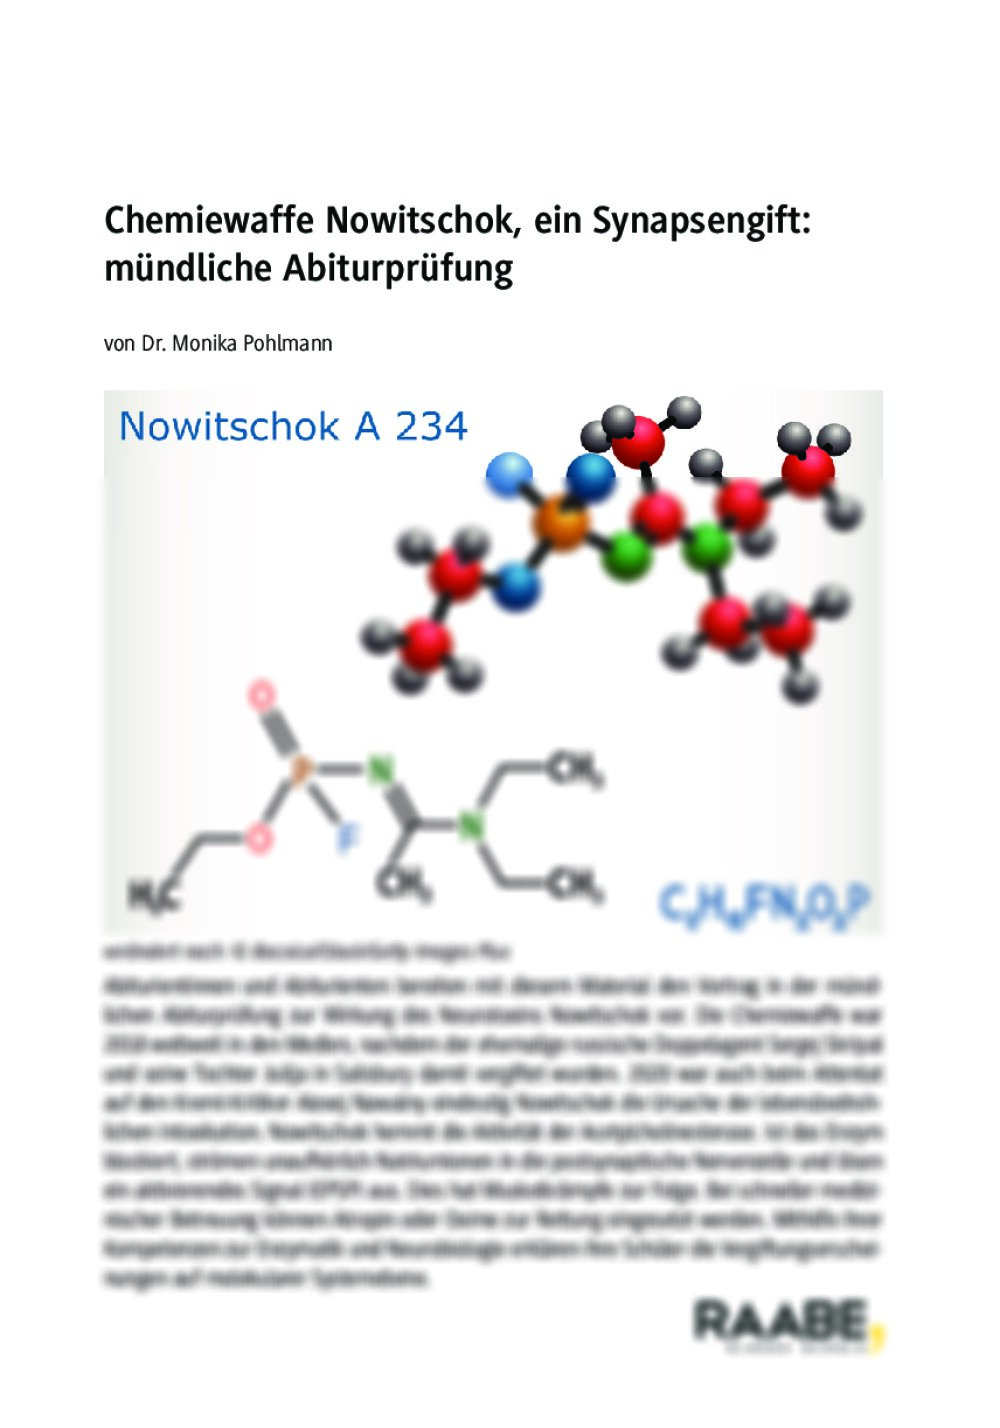 Mündliche Abiturprüfung: Chemiewaffe Nowitschok, ein Synapsengift - Seite 1